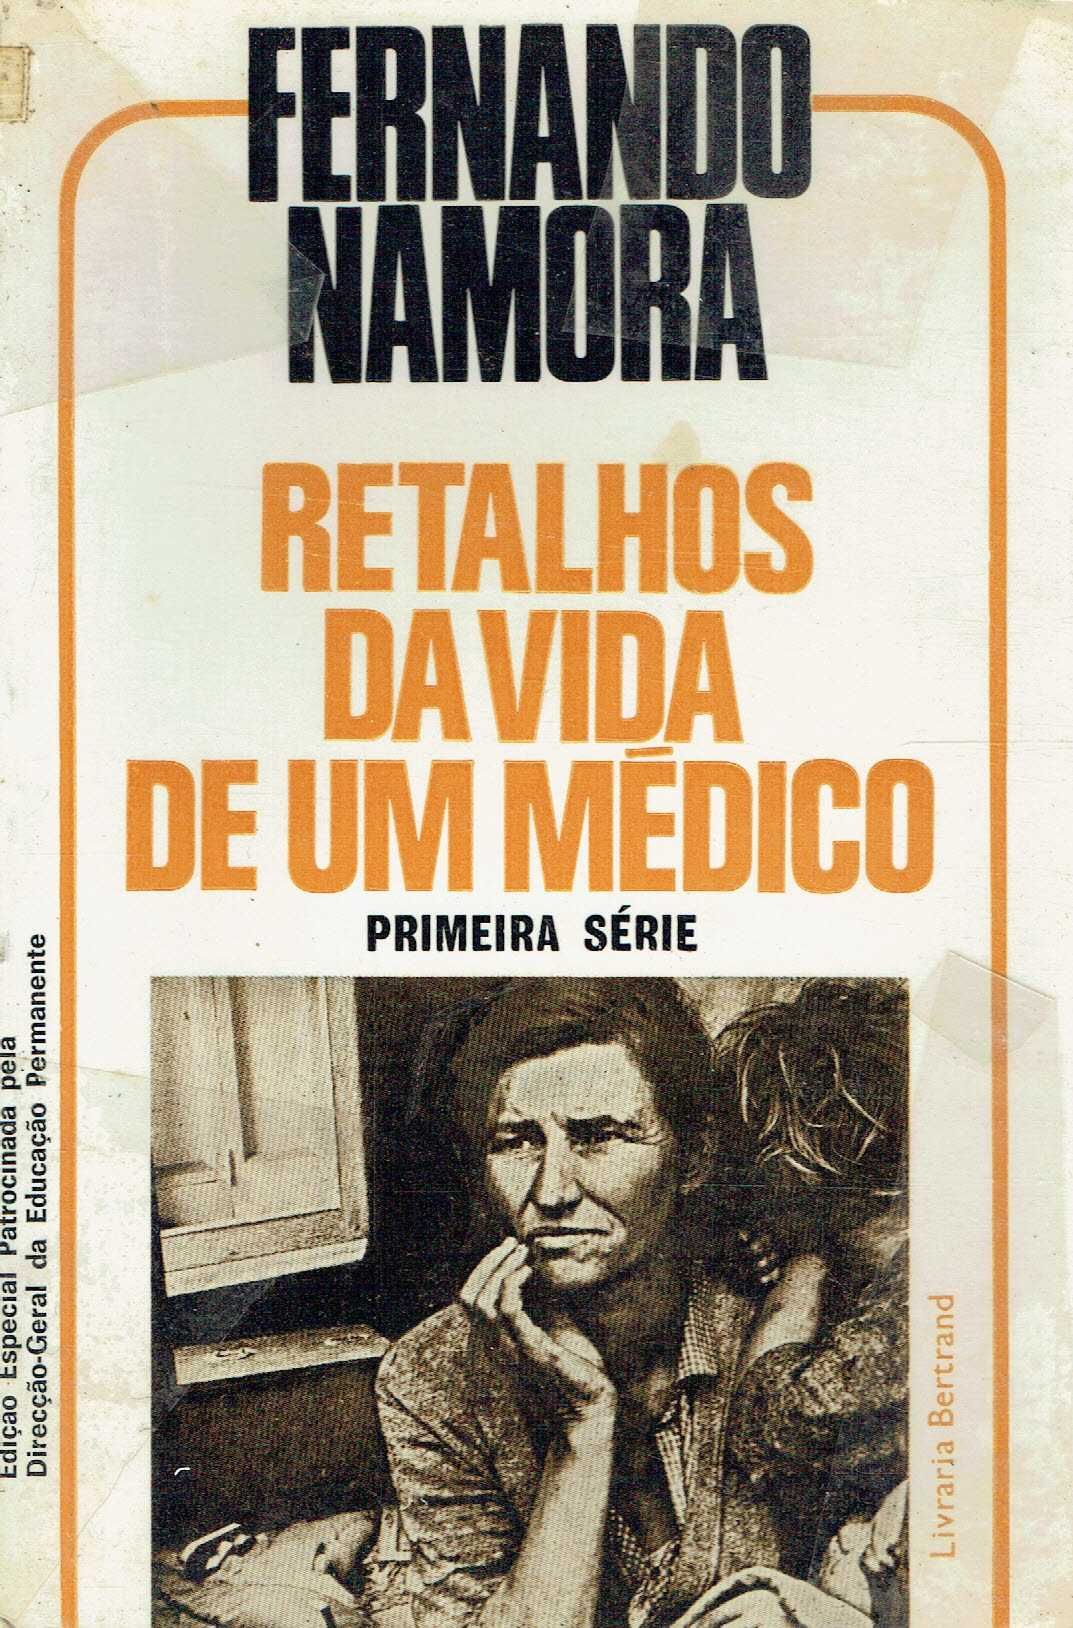 766

Retalhos da Vida de um Médico- 1ª Serie
de Fernando Namora